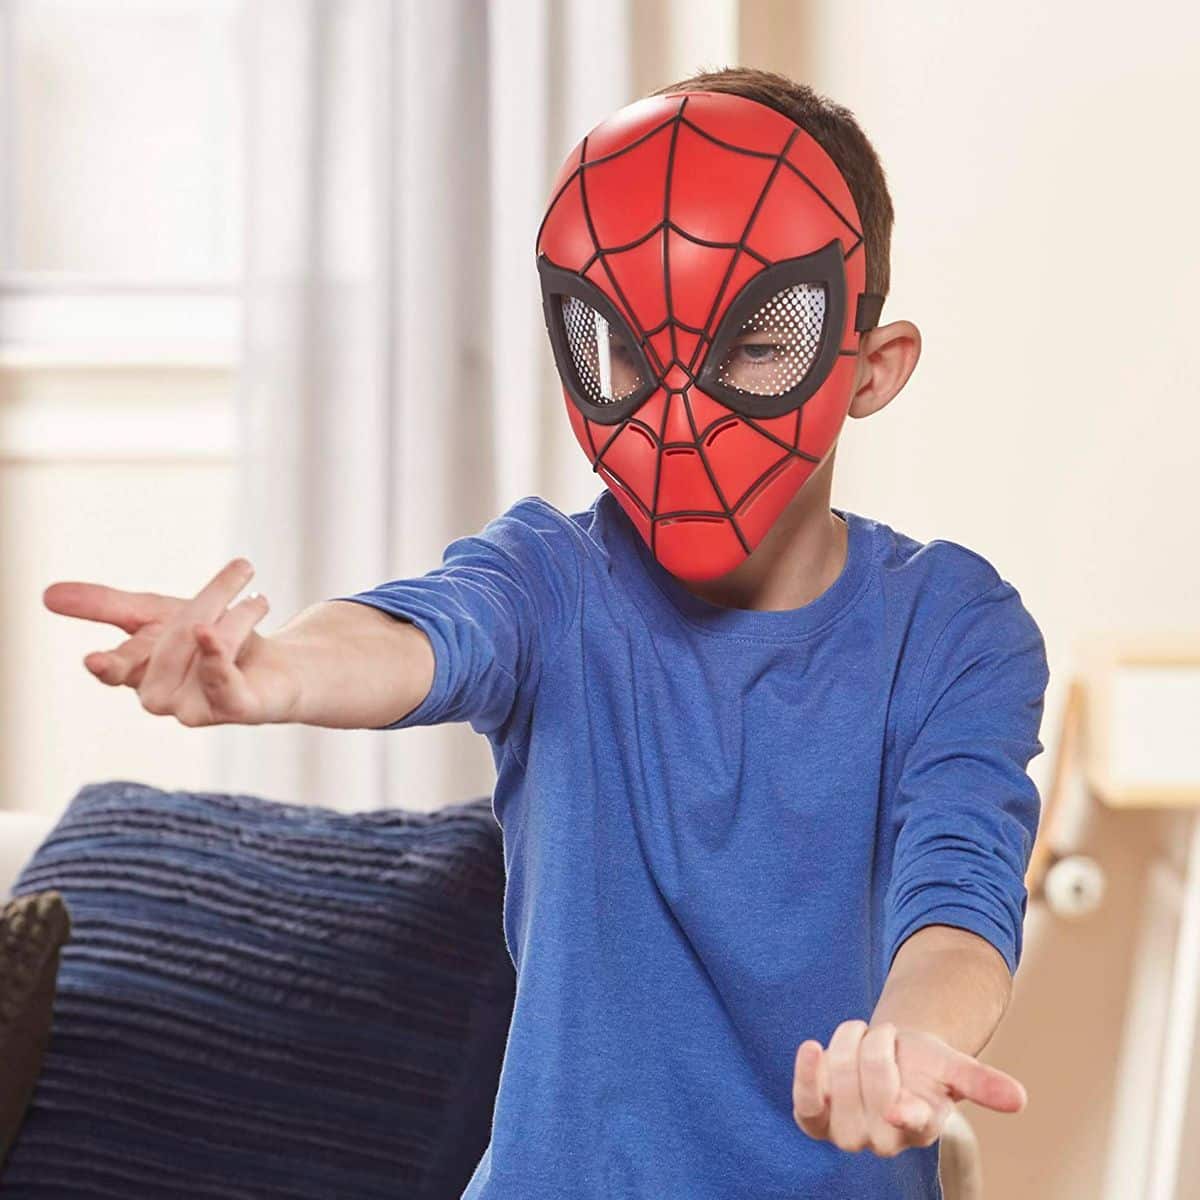 Mascara Spiderman - Marve